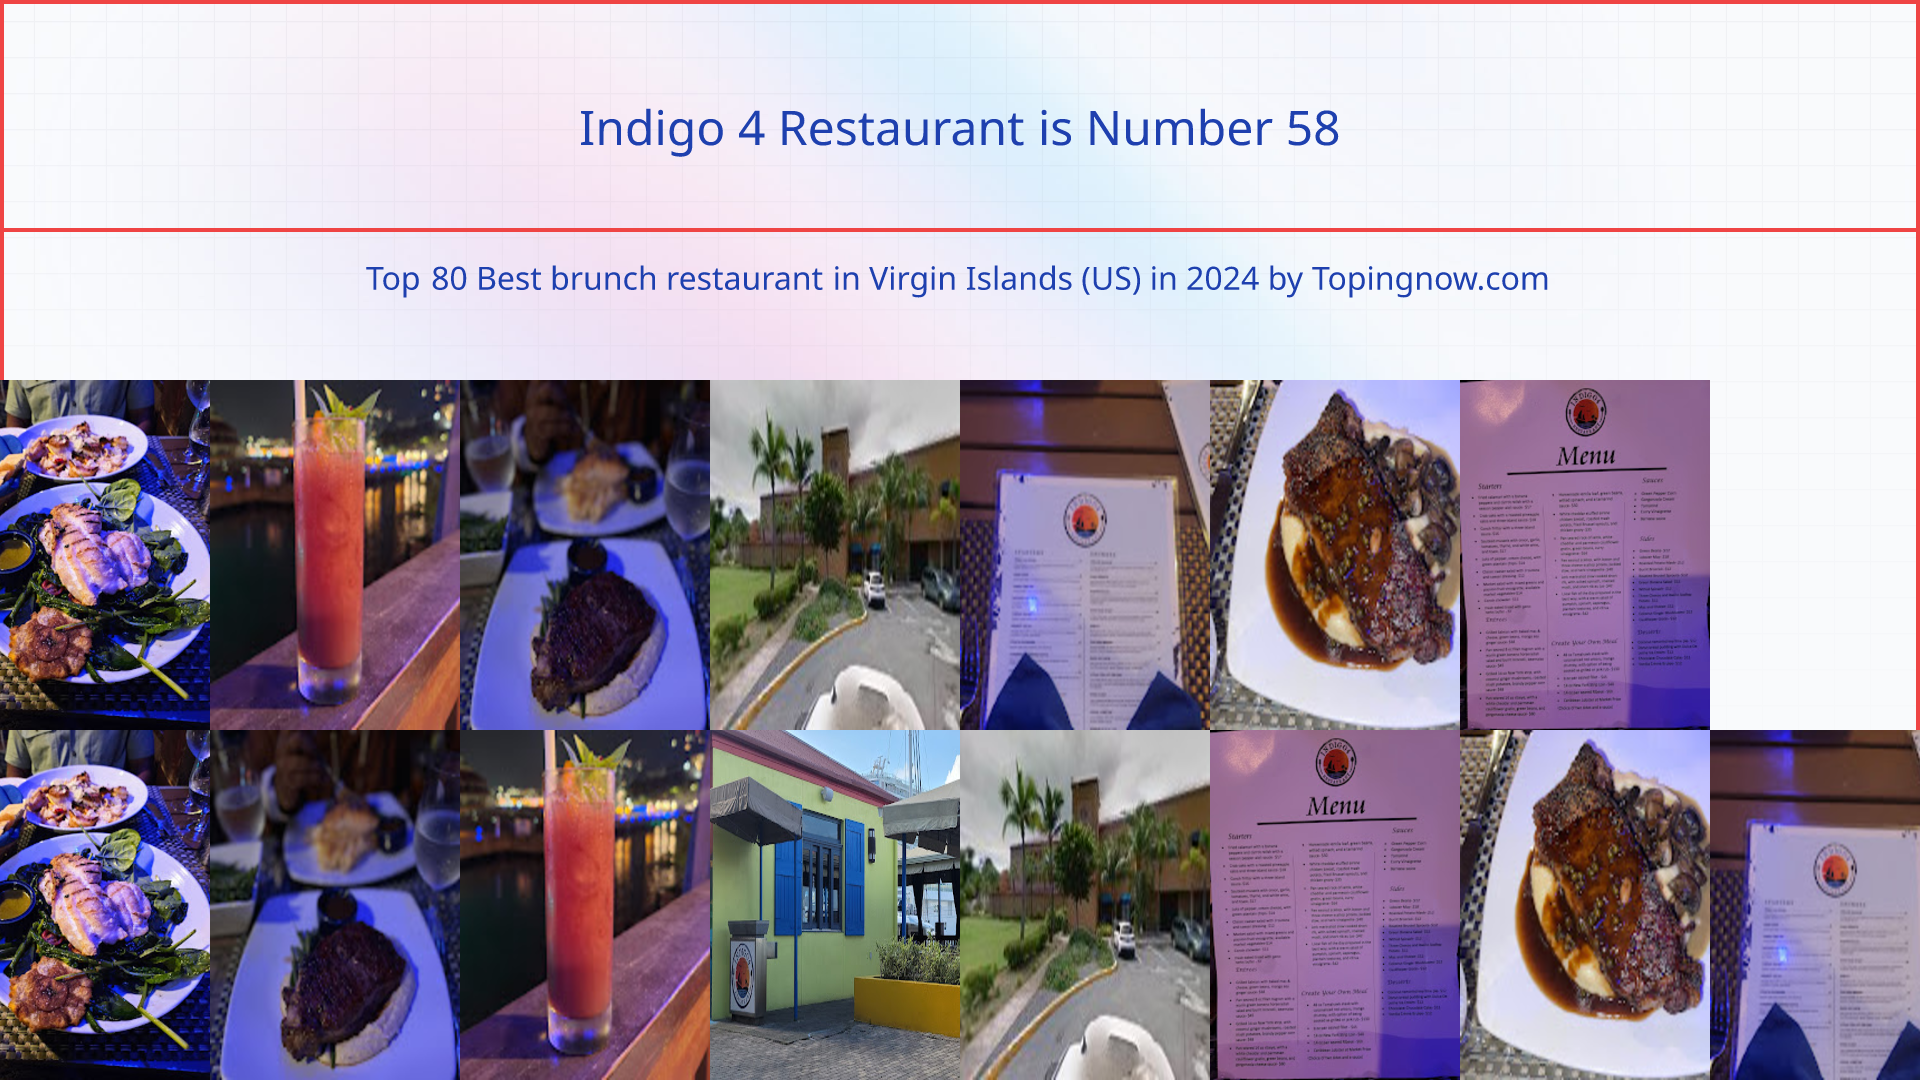 Indigo 4 Restaurant: Top 80 Best brunch restaurant in Virgin Islands (US) in 2024